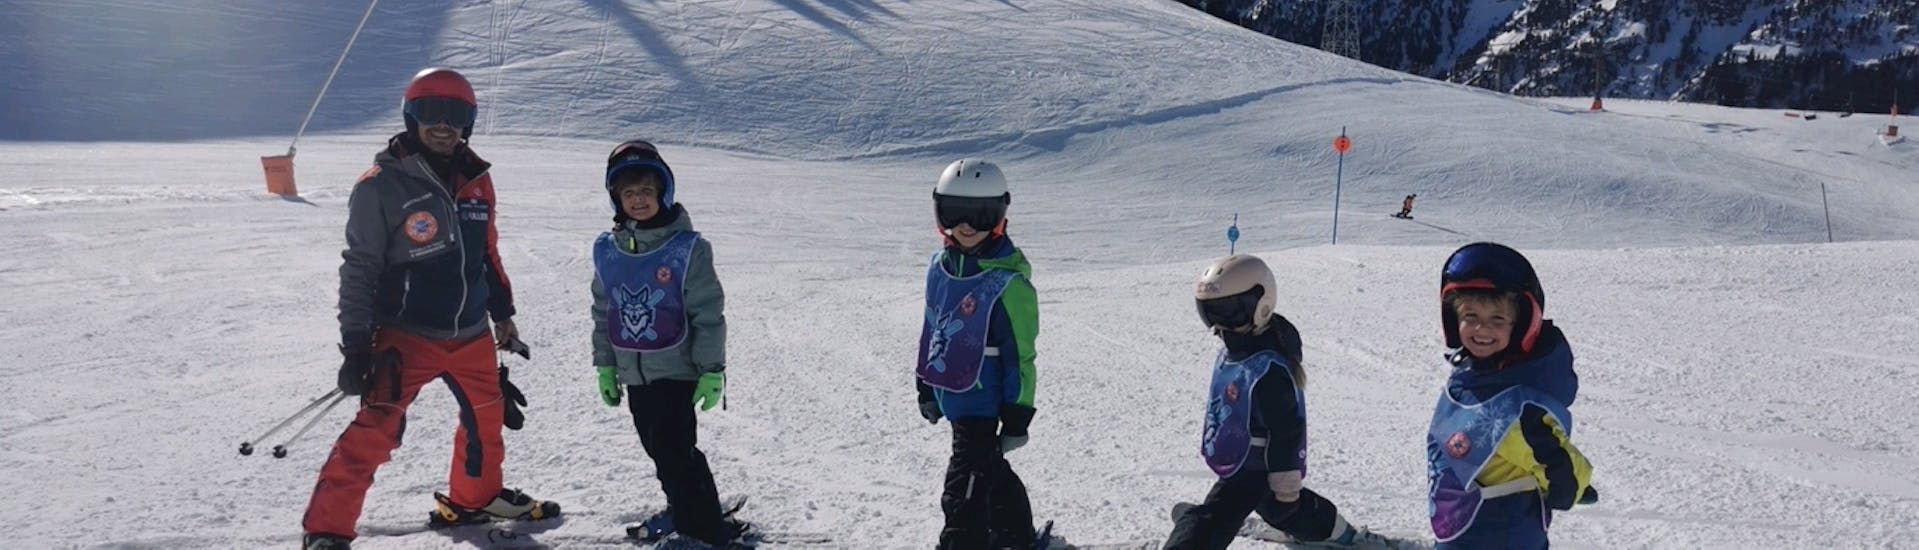 Clases de esquí para niños de todos los niveles (6-16 años) - Día completo.